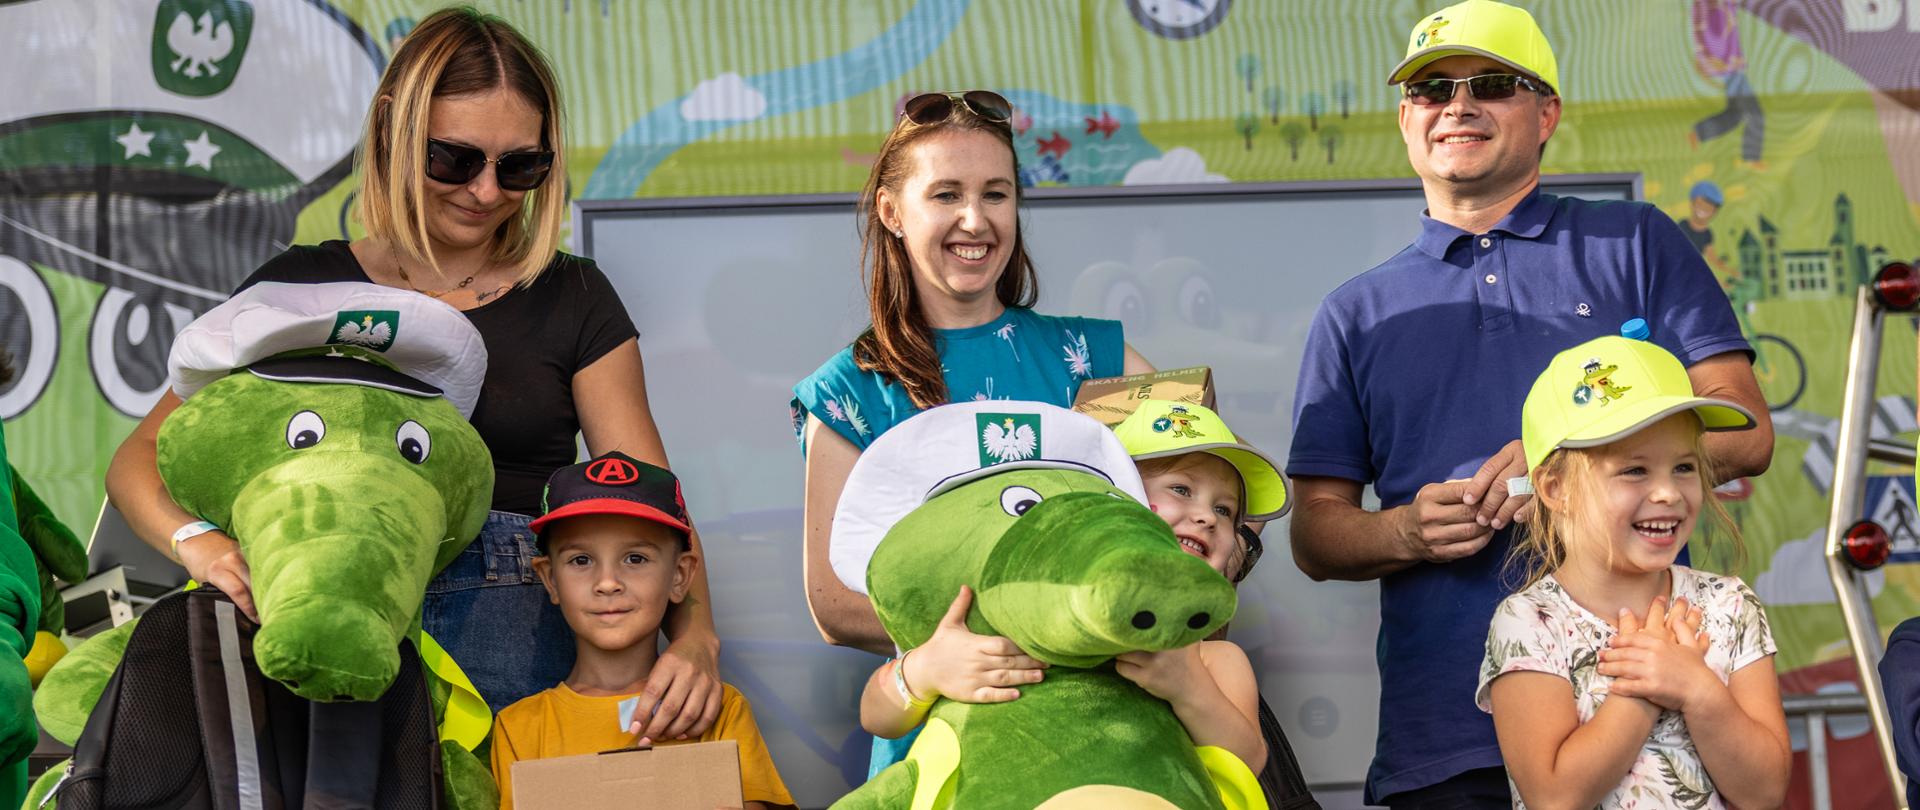 Troje dorosłych i troje dzieci. Wszyscy się uśmiechają. Dzieci otrzymały nagrody za udział w konkursie, w tym duże maskotki Krokodylka Tirka.